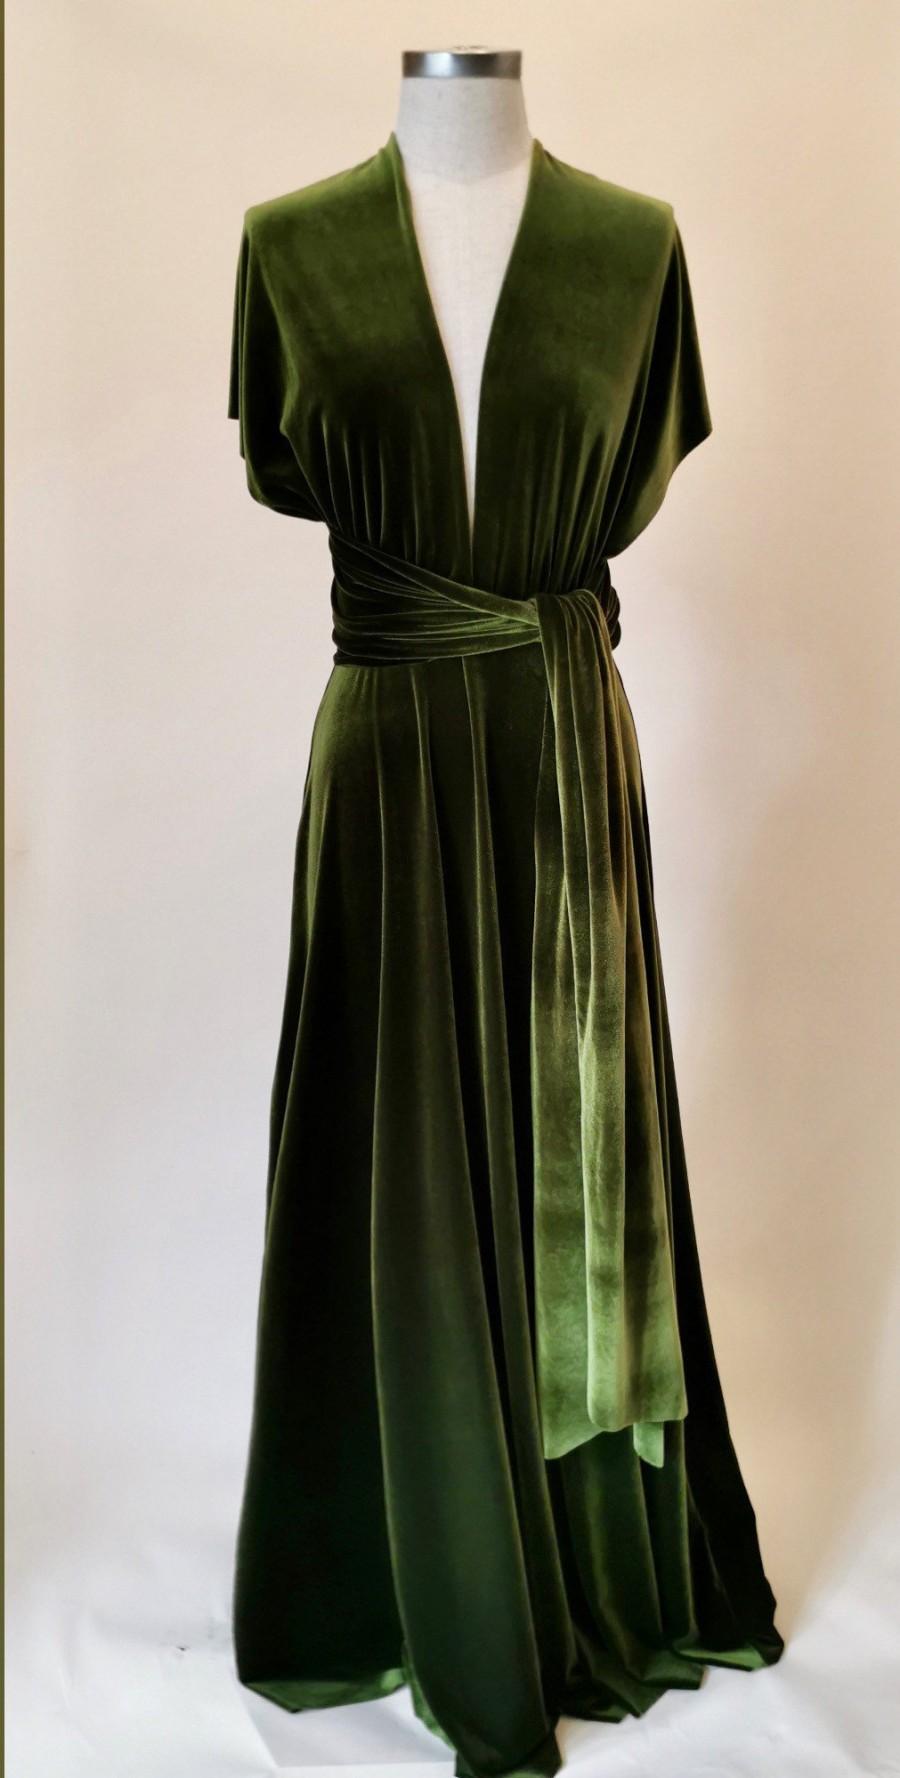 زفاف - Olive green velvet dress, infinity dress, bridesmaid dress, prom dress, ball gown, long dress, multiway dress, convertible dress, party dres